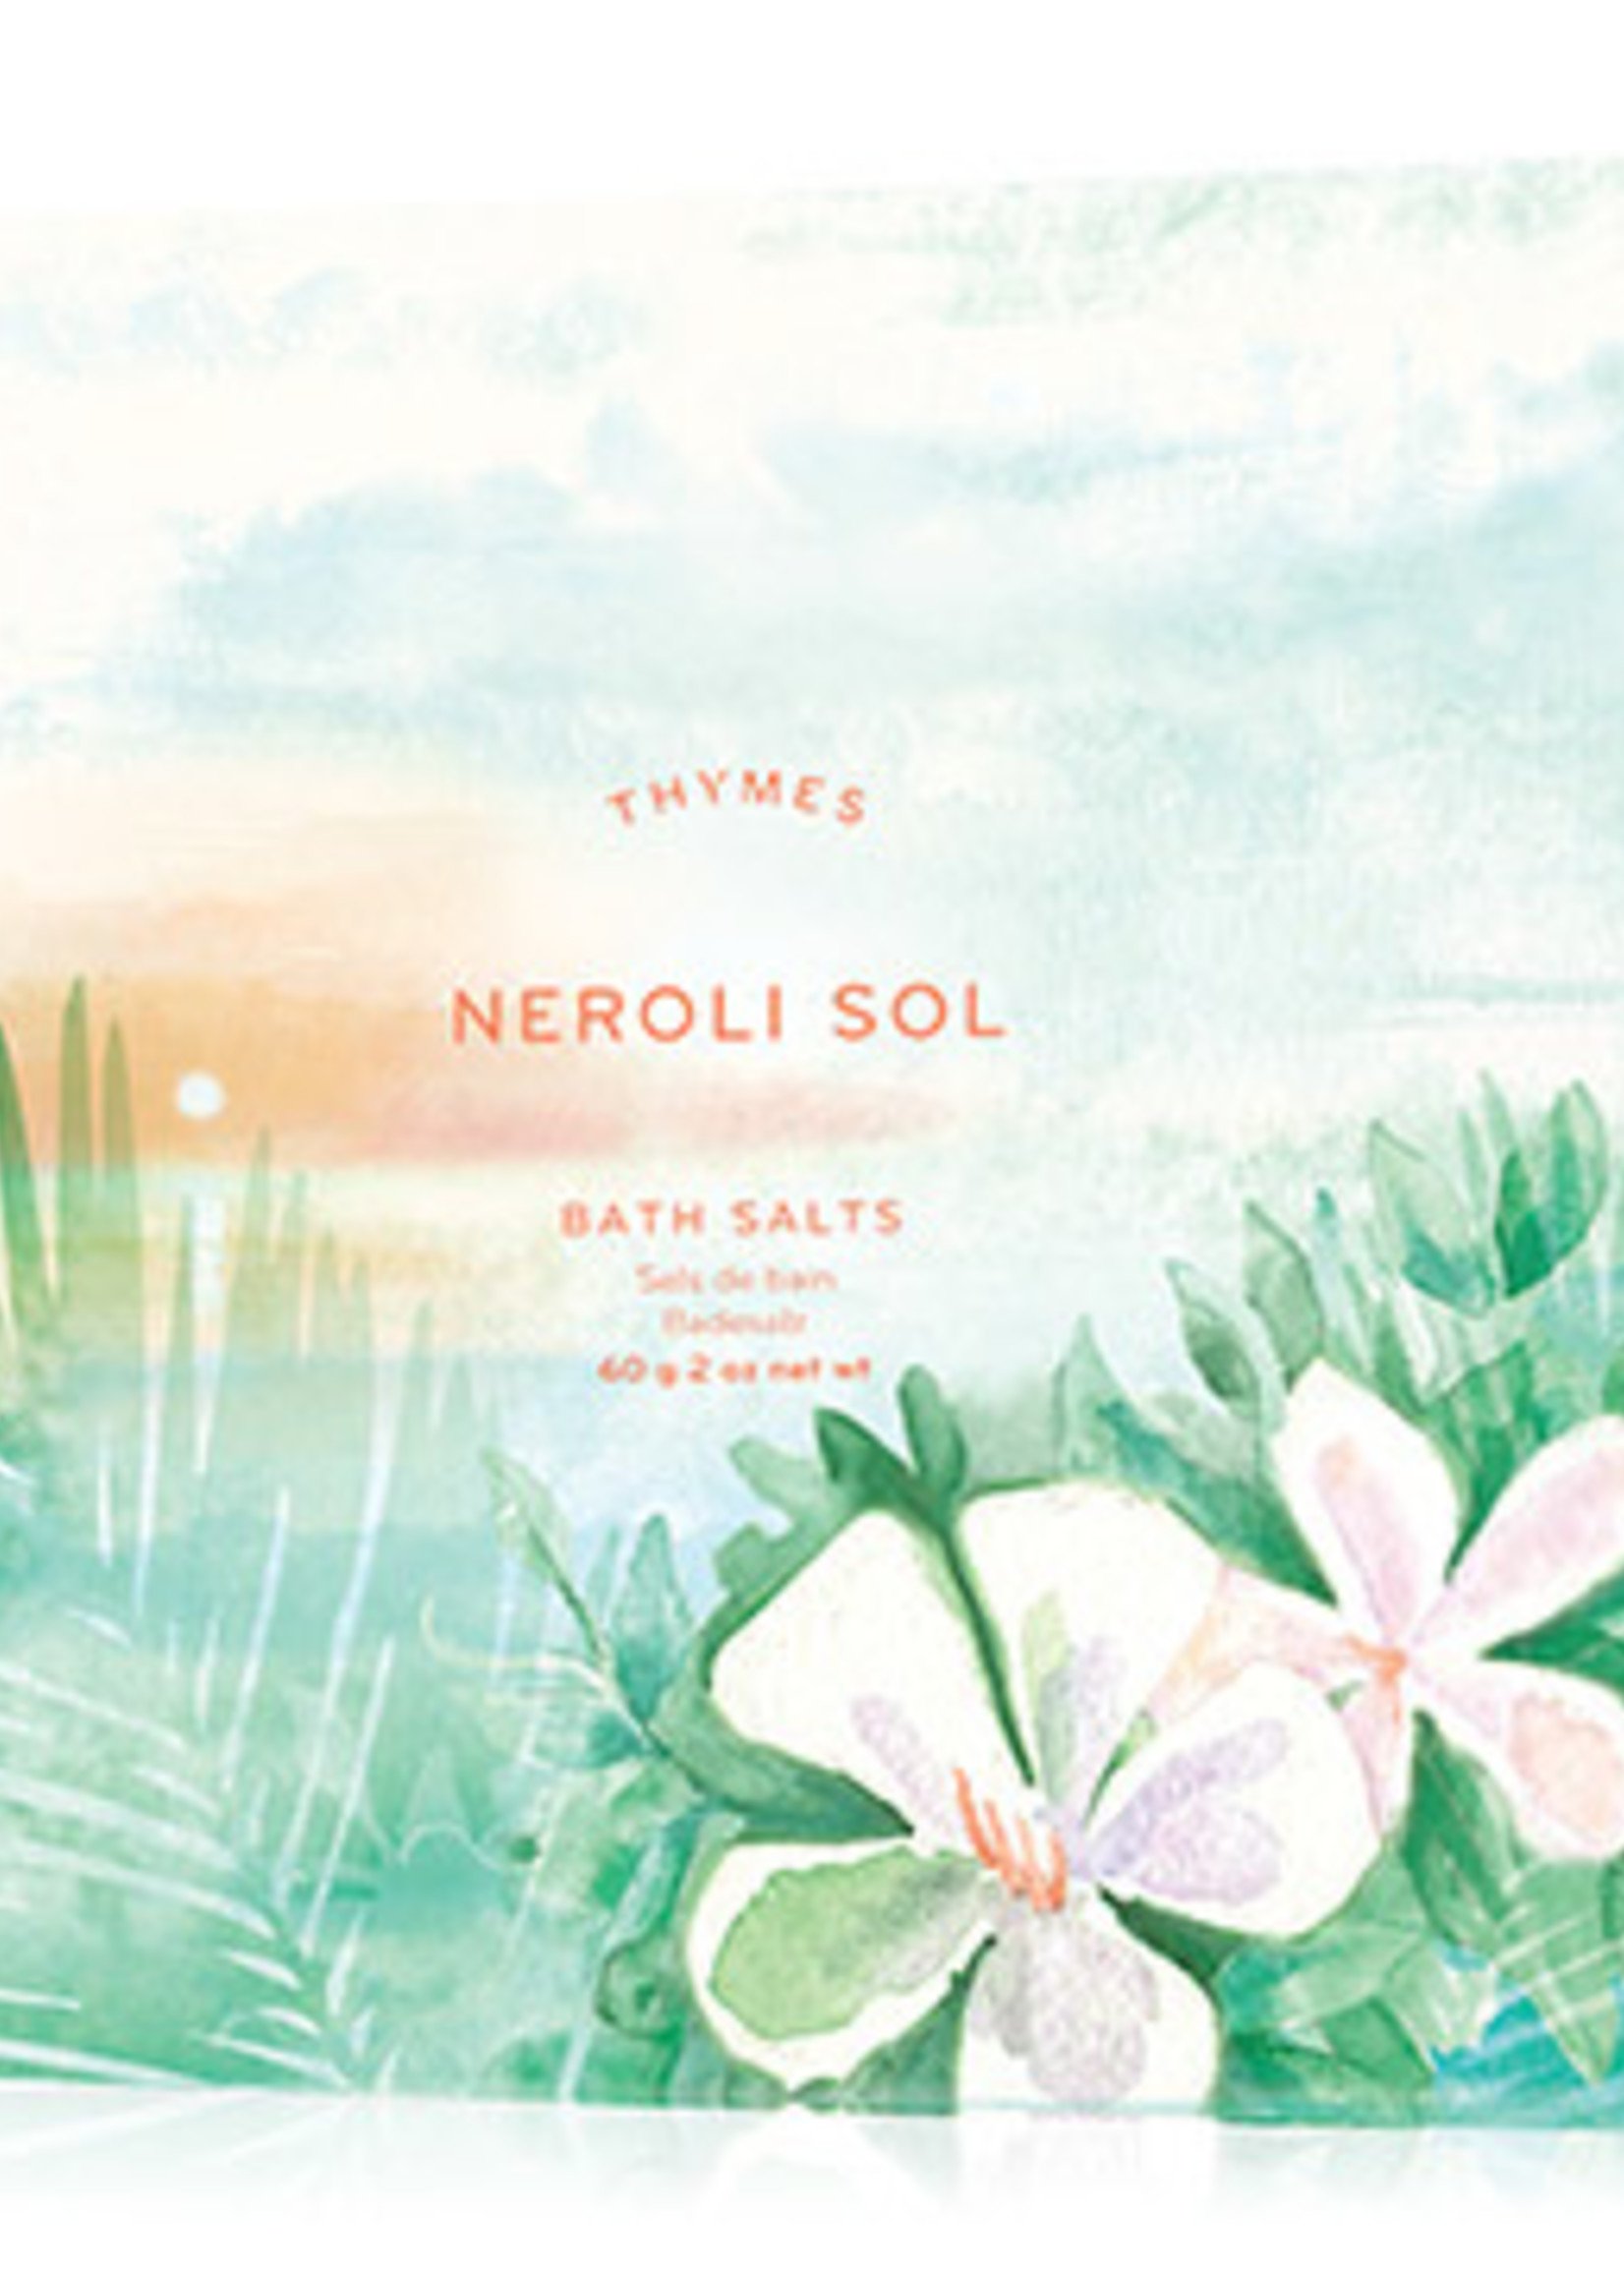 Neroli Sol Bath Salts Envelope